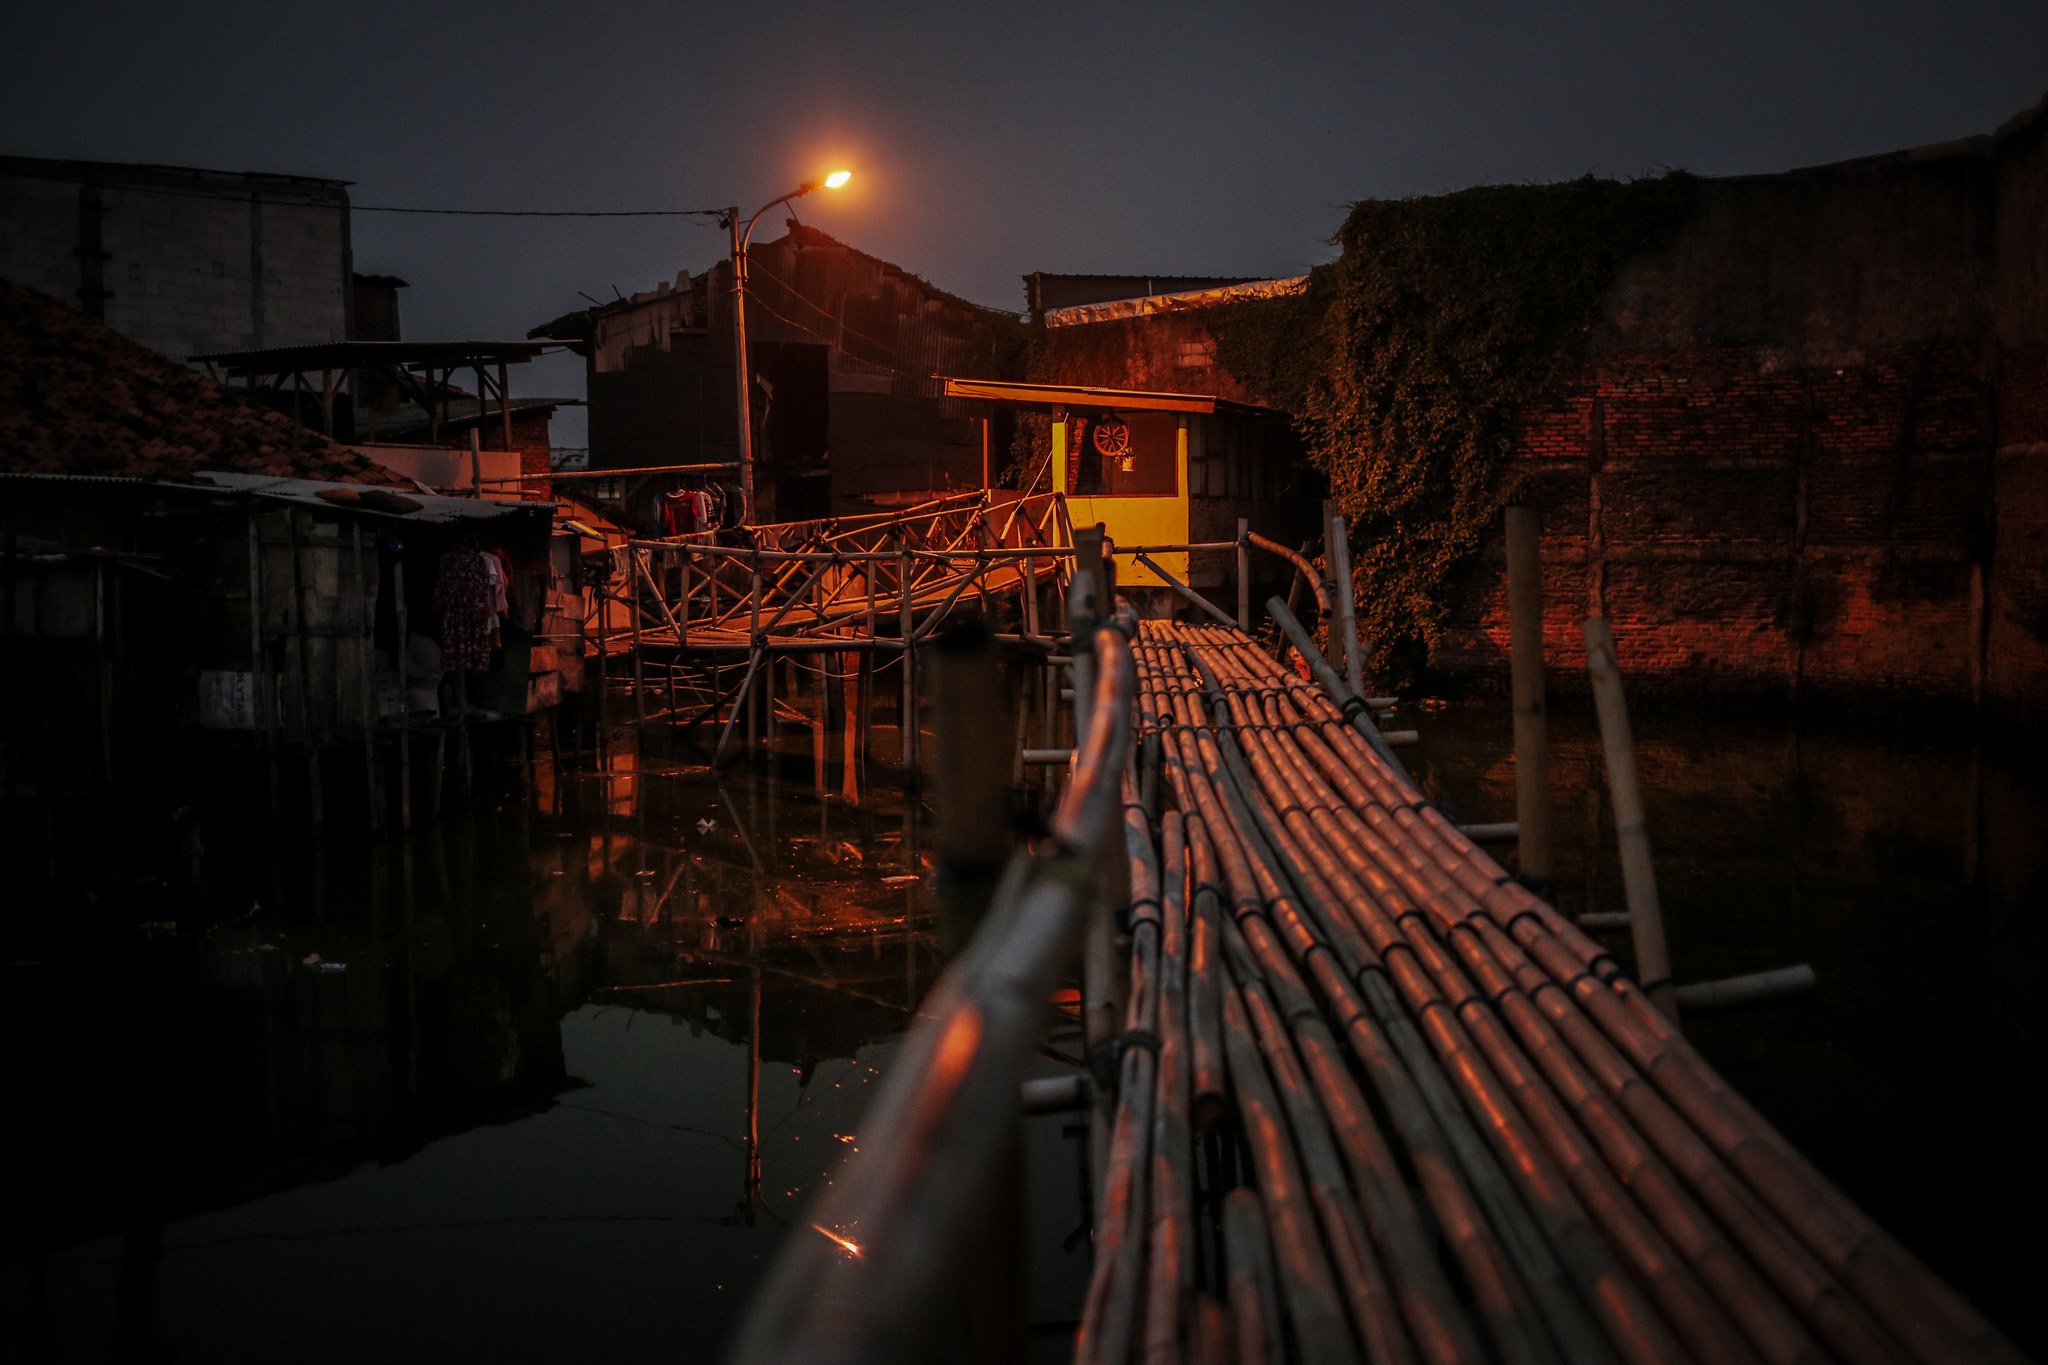 Jembatan penyebrangan orang yang terbuat dari bambu menjadi akses pejalan kaki yang hendak menyebrang di Kampung Apung, Kapuk, Cengkareng, jakarta, Kamis, (29/7/2021).